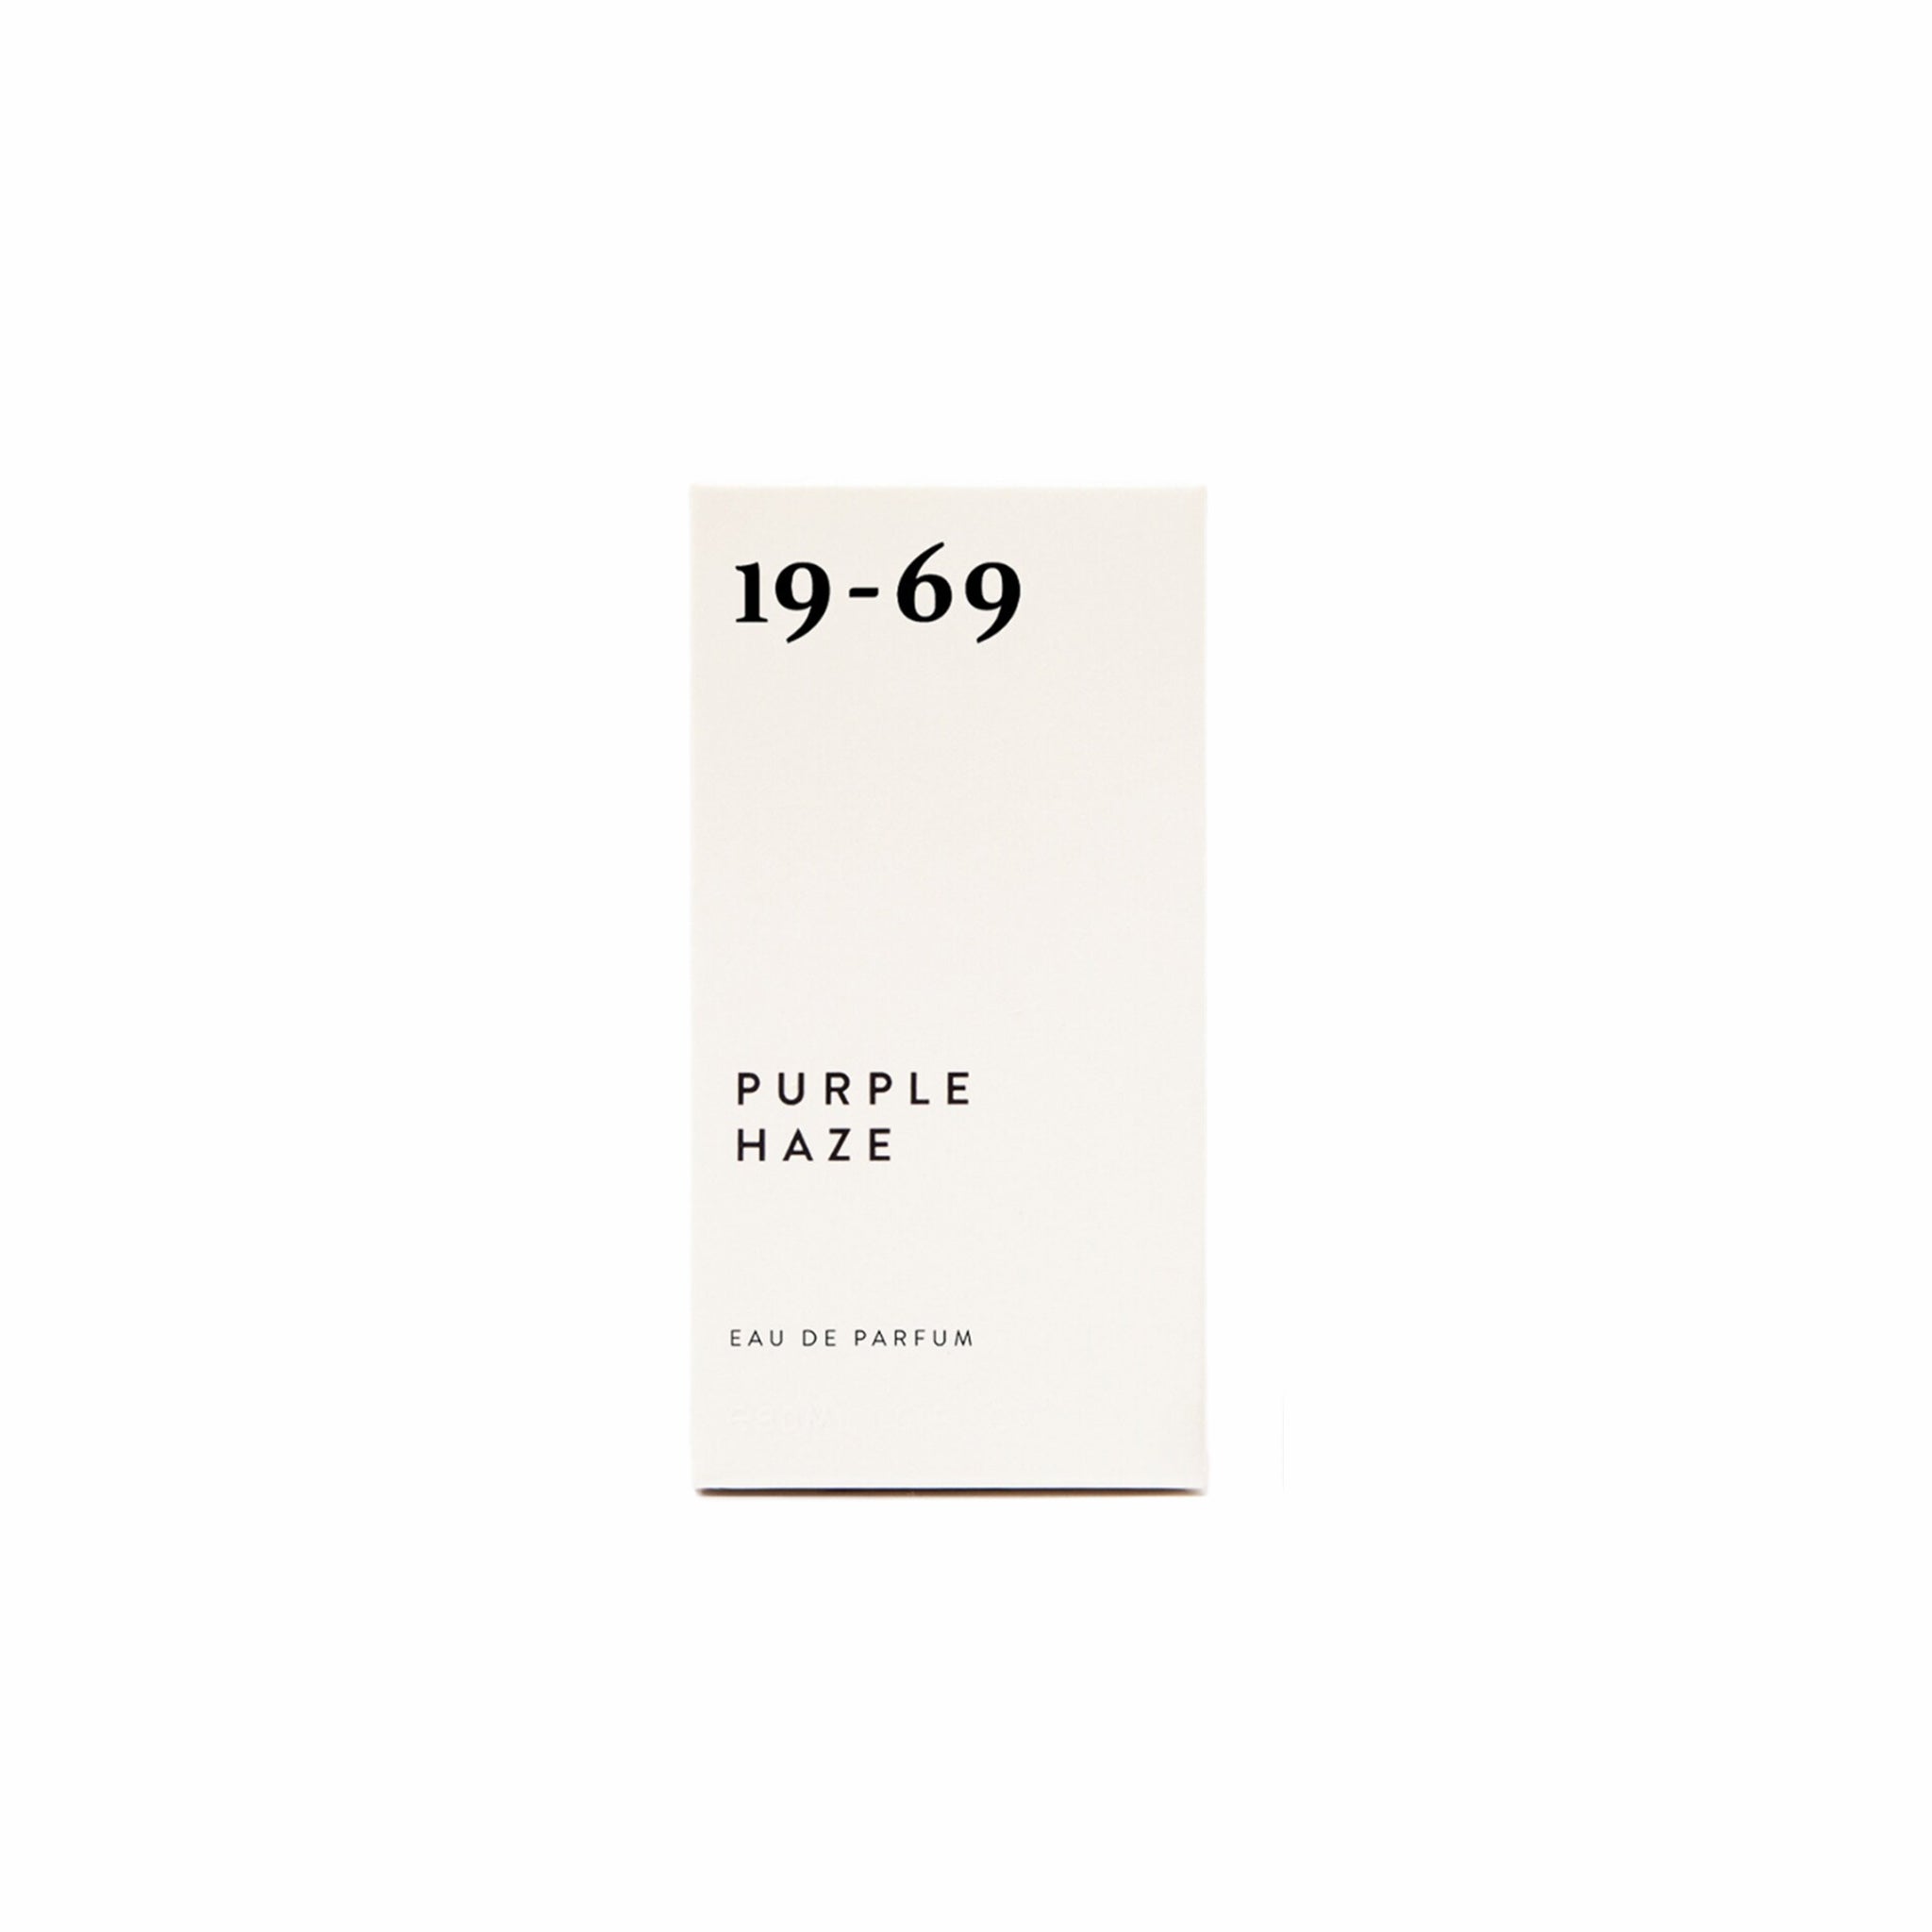 19-69 Purple Haze Eau de Parfum (30mL) - August Shop